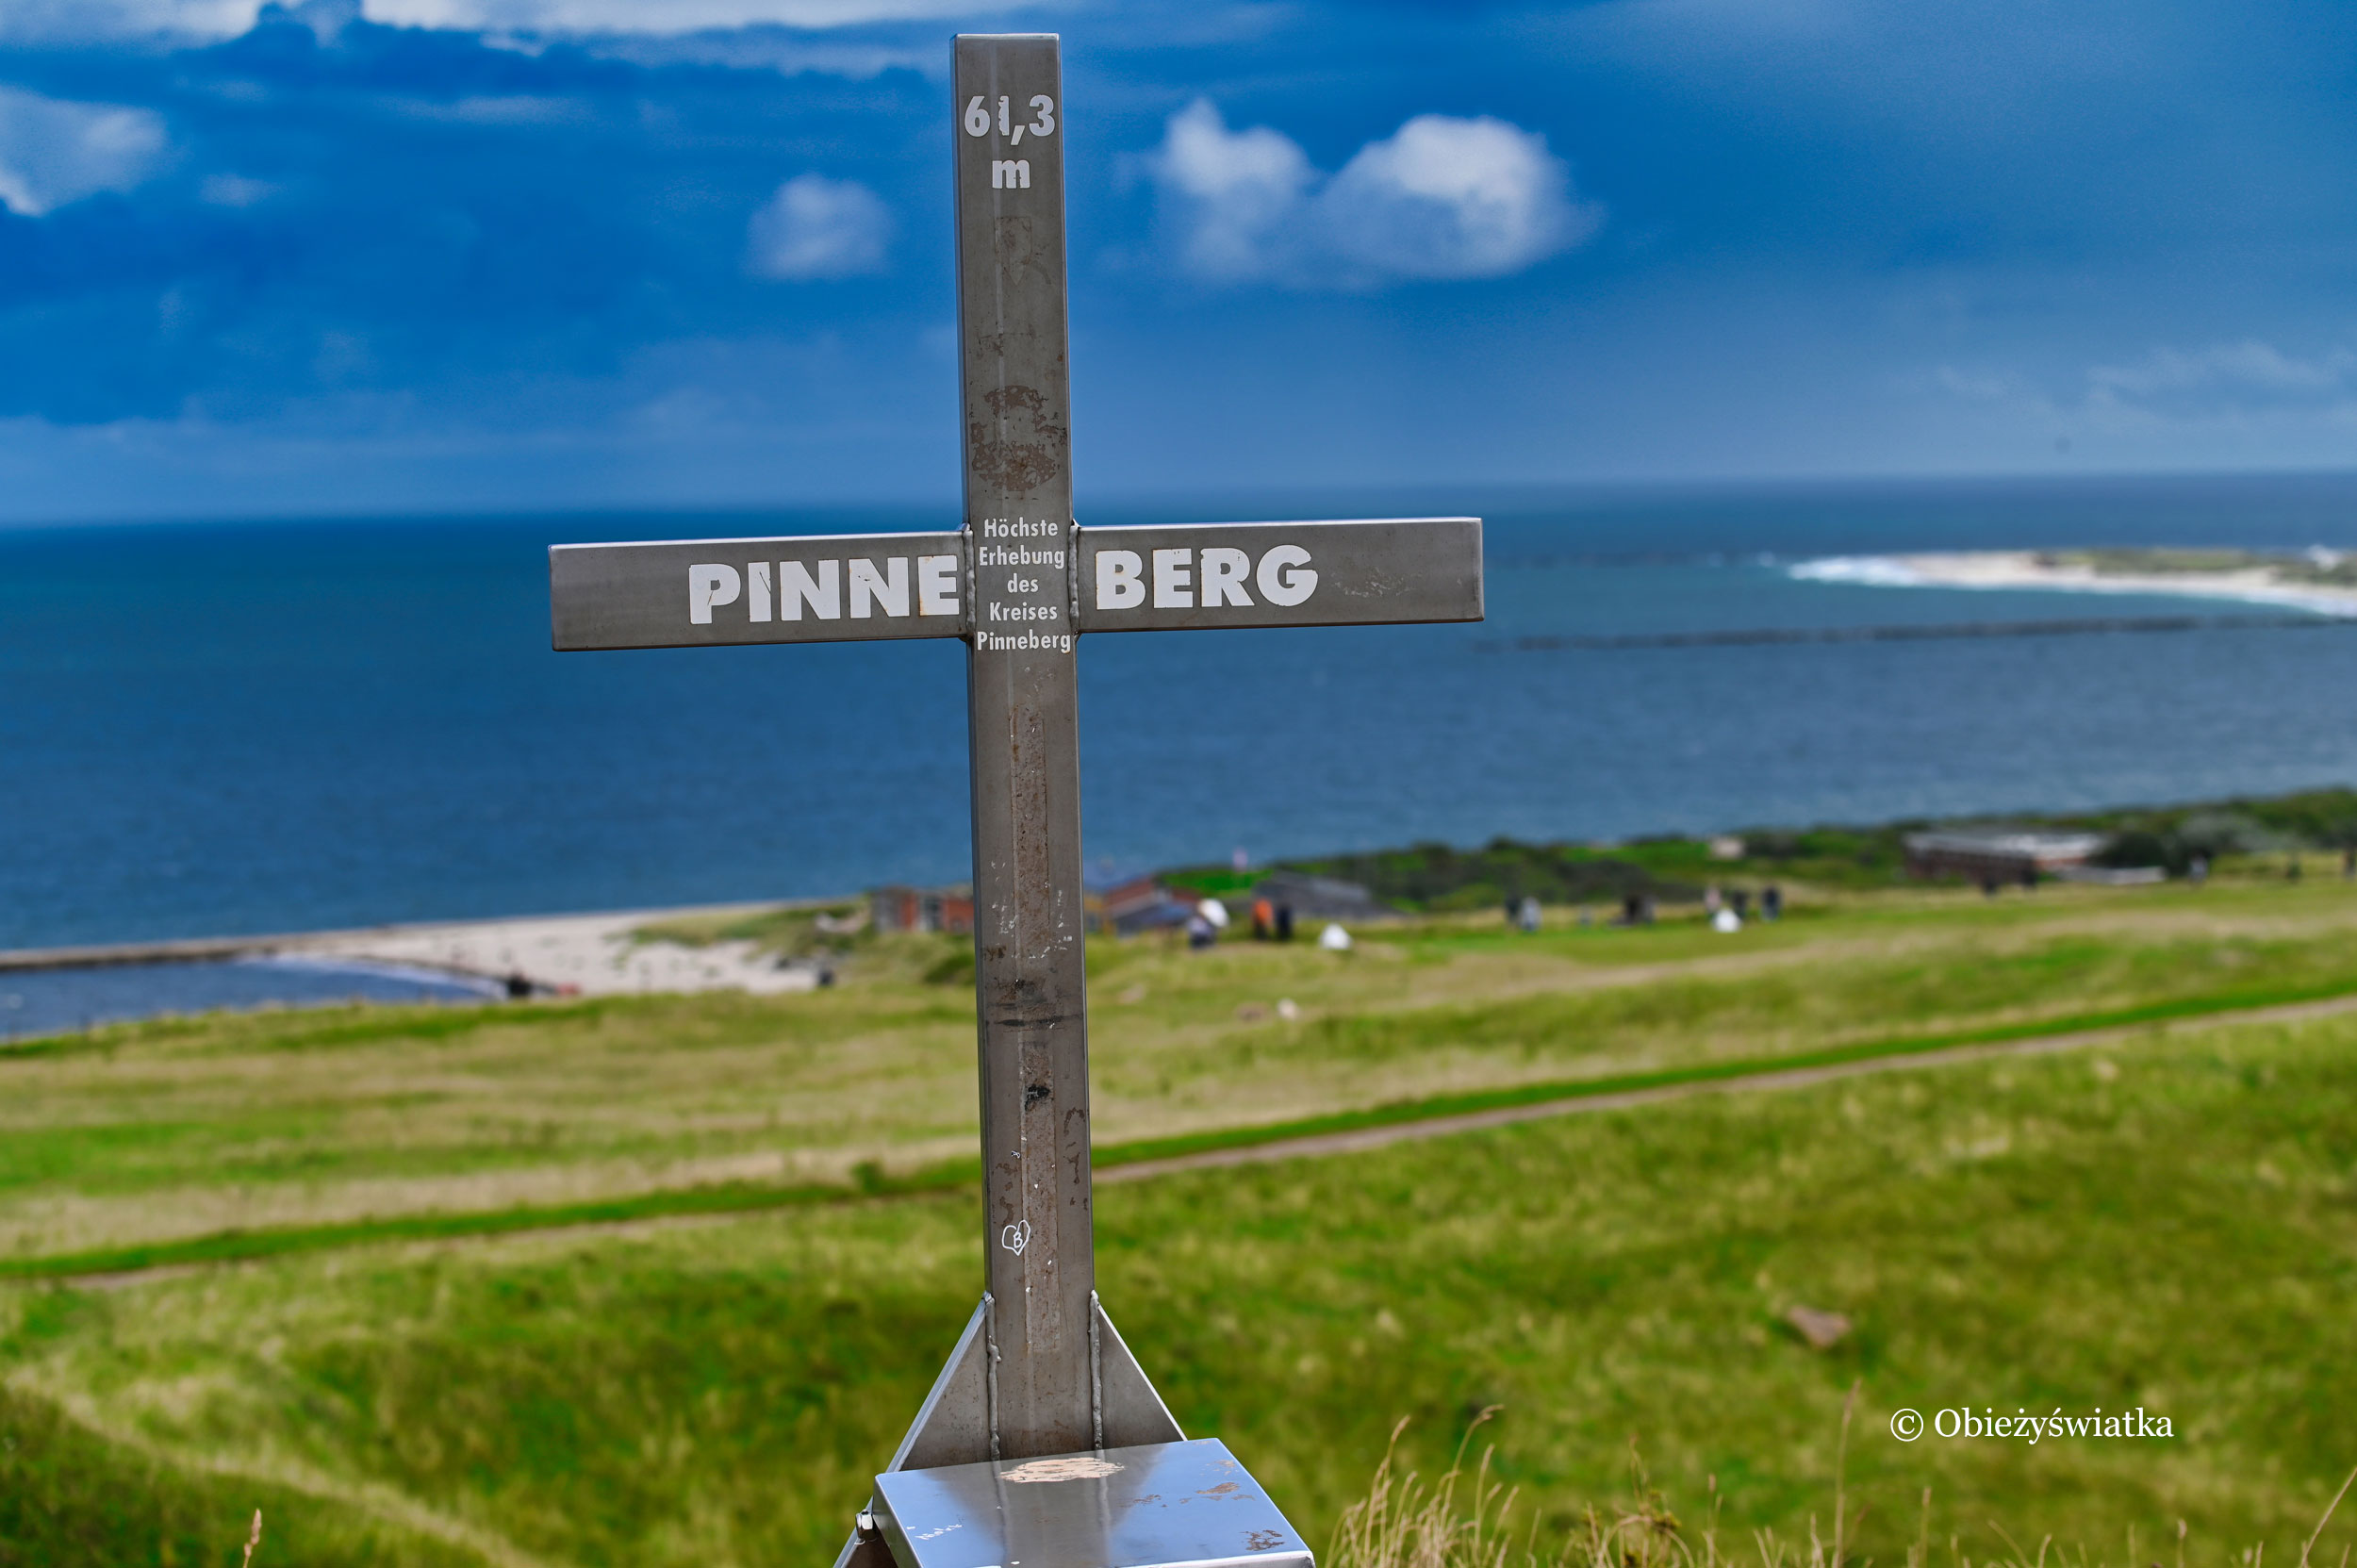 Najwyżysz punkt Helgolandu - Pinneberg